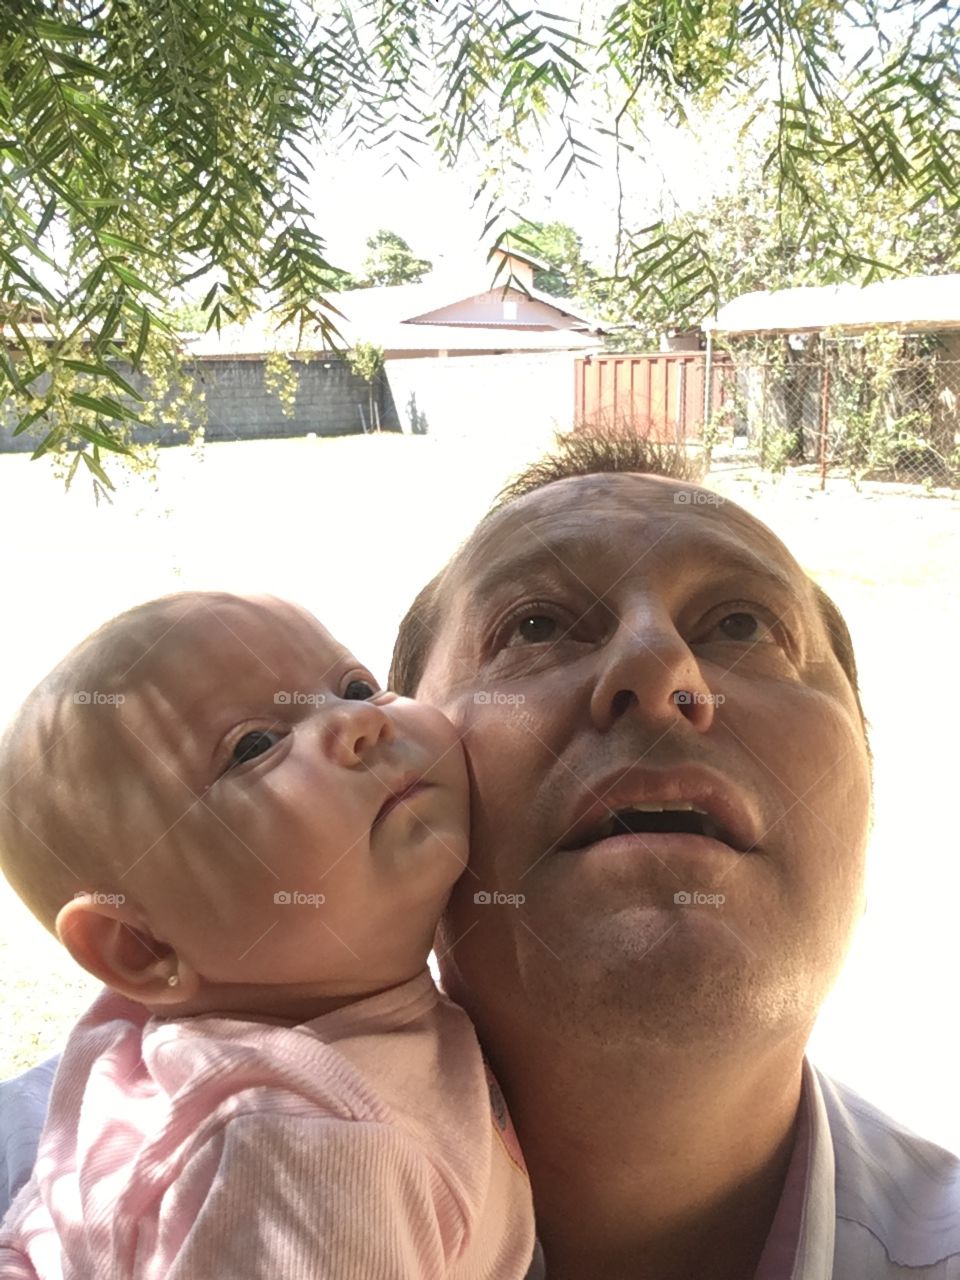 ‪Momento DESCOBRIMENTO!‬
‪Conhecendo as plantinhas do Lar Doce Lar. ‬
‪Minha aluna-baby presta bastante atenção. Nota 10!‬
‪👨‍👧‬
‪#PaiDeMenina‬
‪#bebê‬
